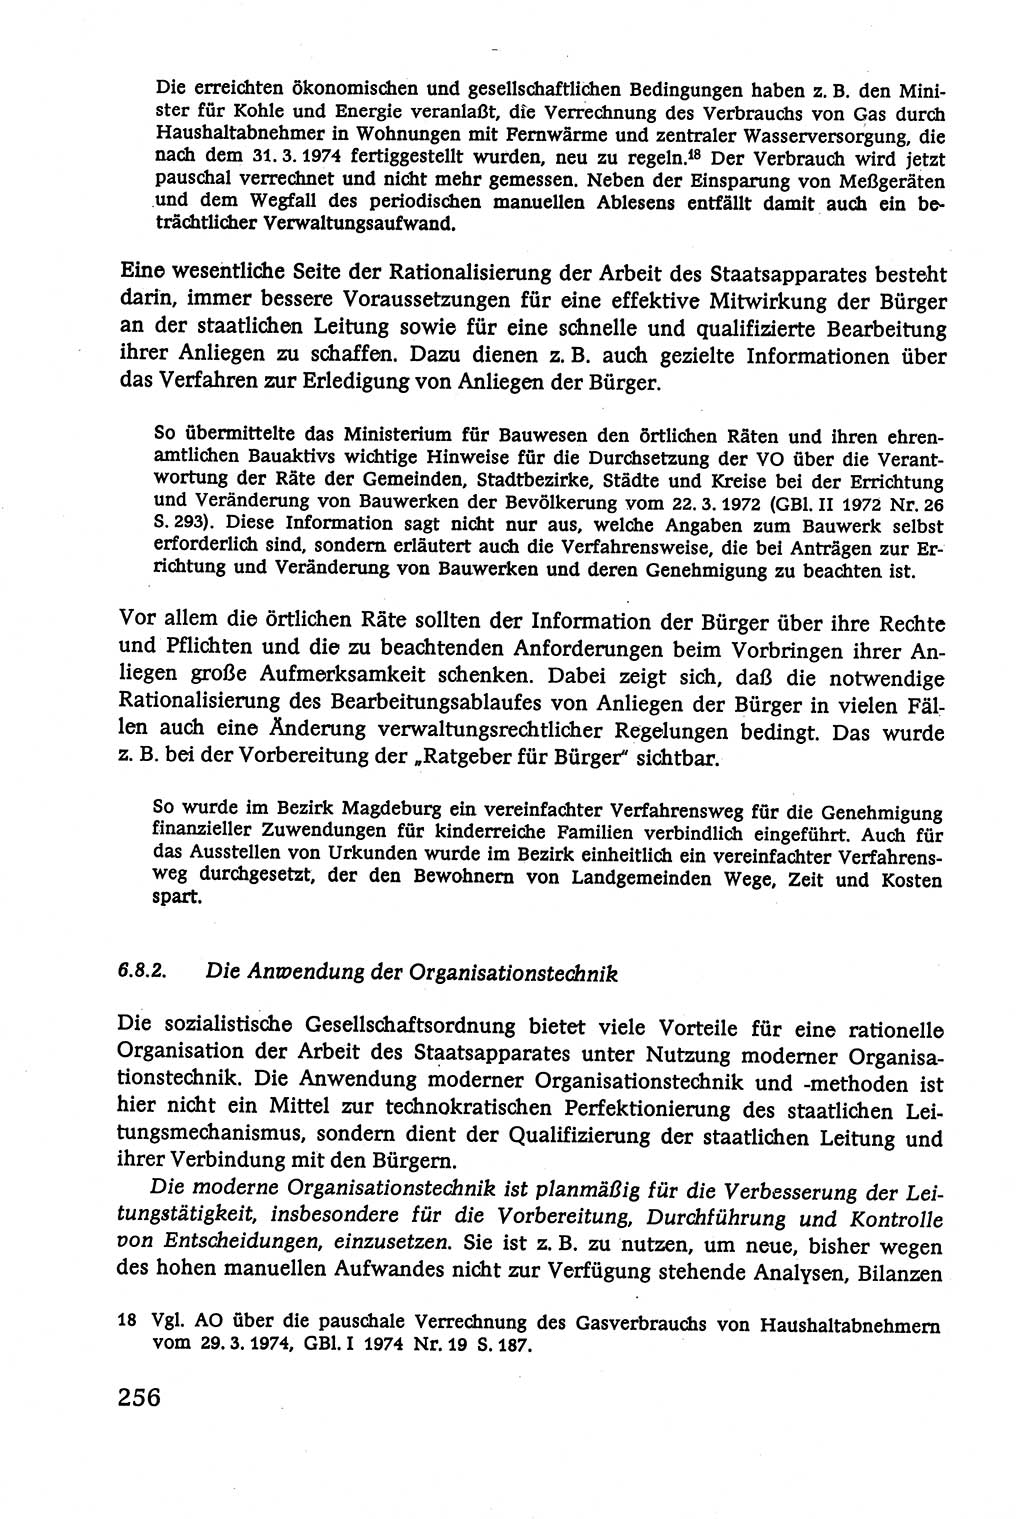 Verwaltungsrecht [Deutsche Demokratische Republik (DDR)], Lehrbuch 1979, Seite 256 (Verw.-R. DDR Lb. 1979, S. 256)